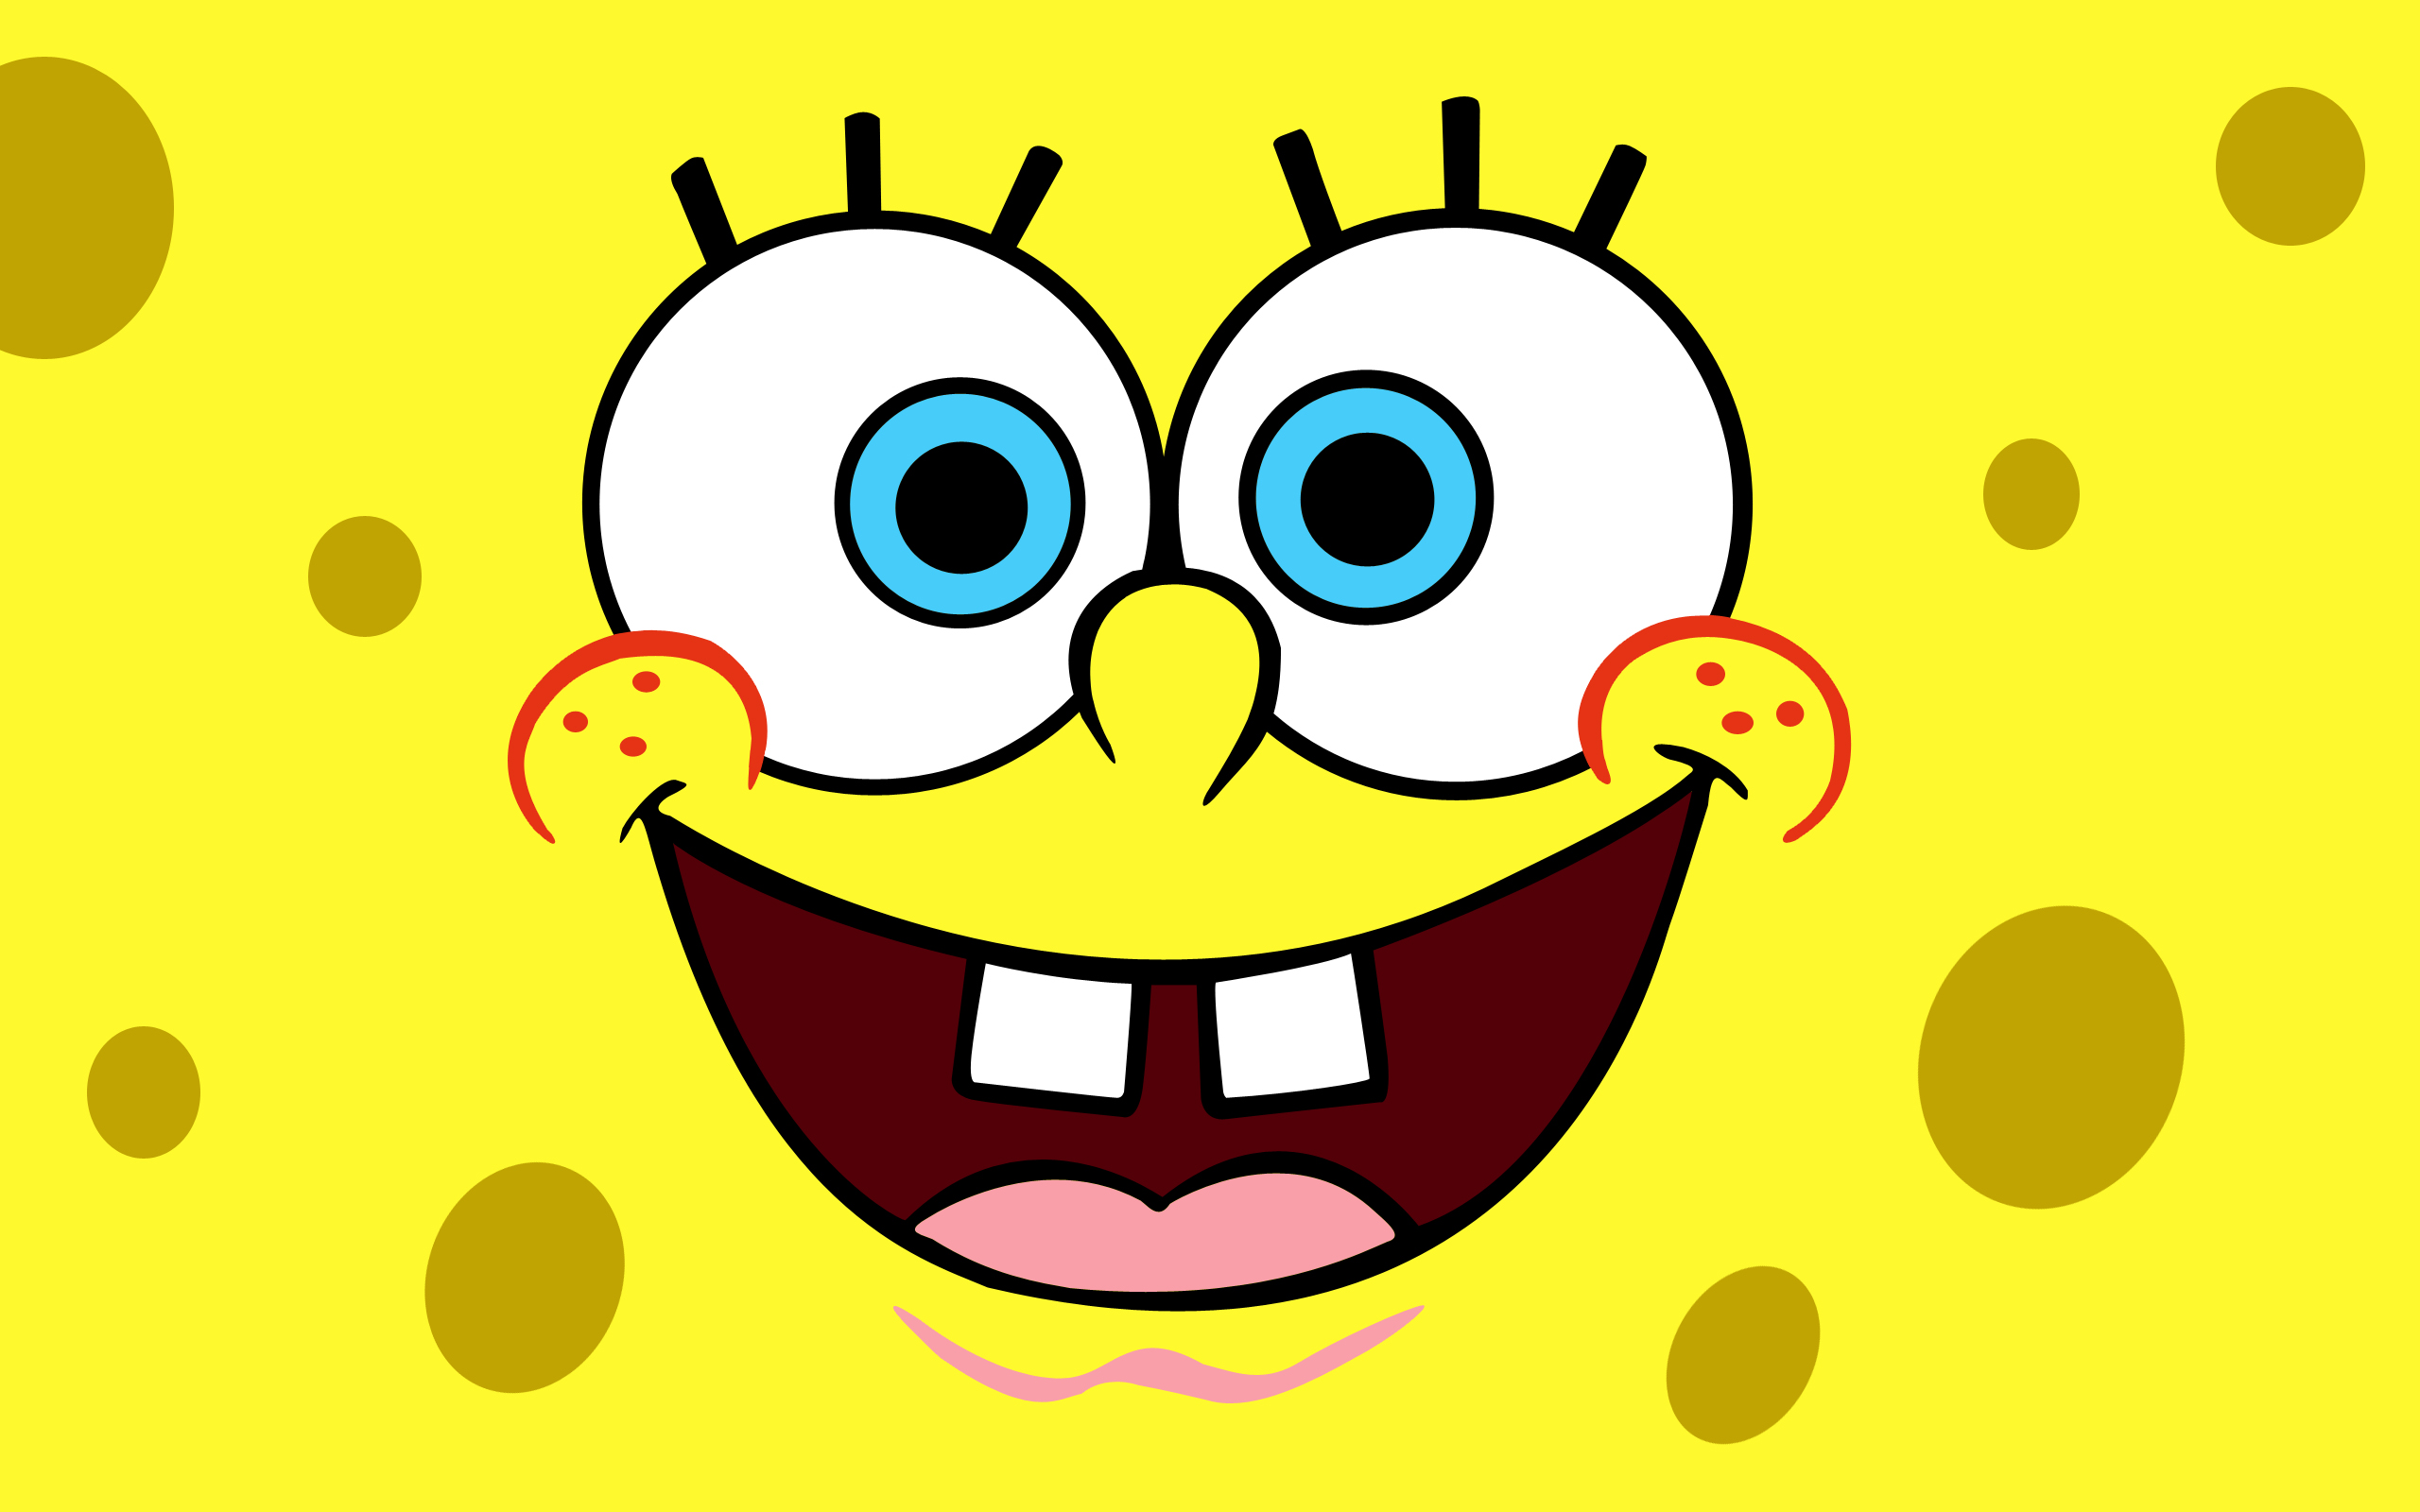 spongebob fond d'écran hd,jaune,dessin animé,sourire,émoticône,illustration